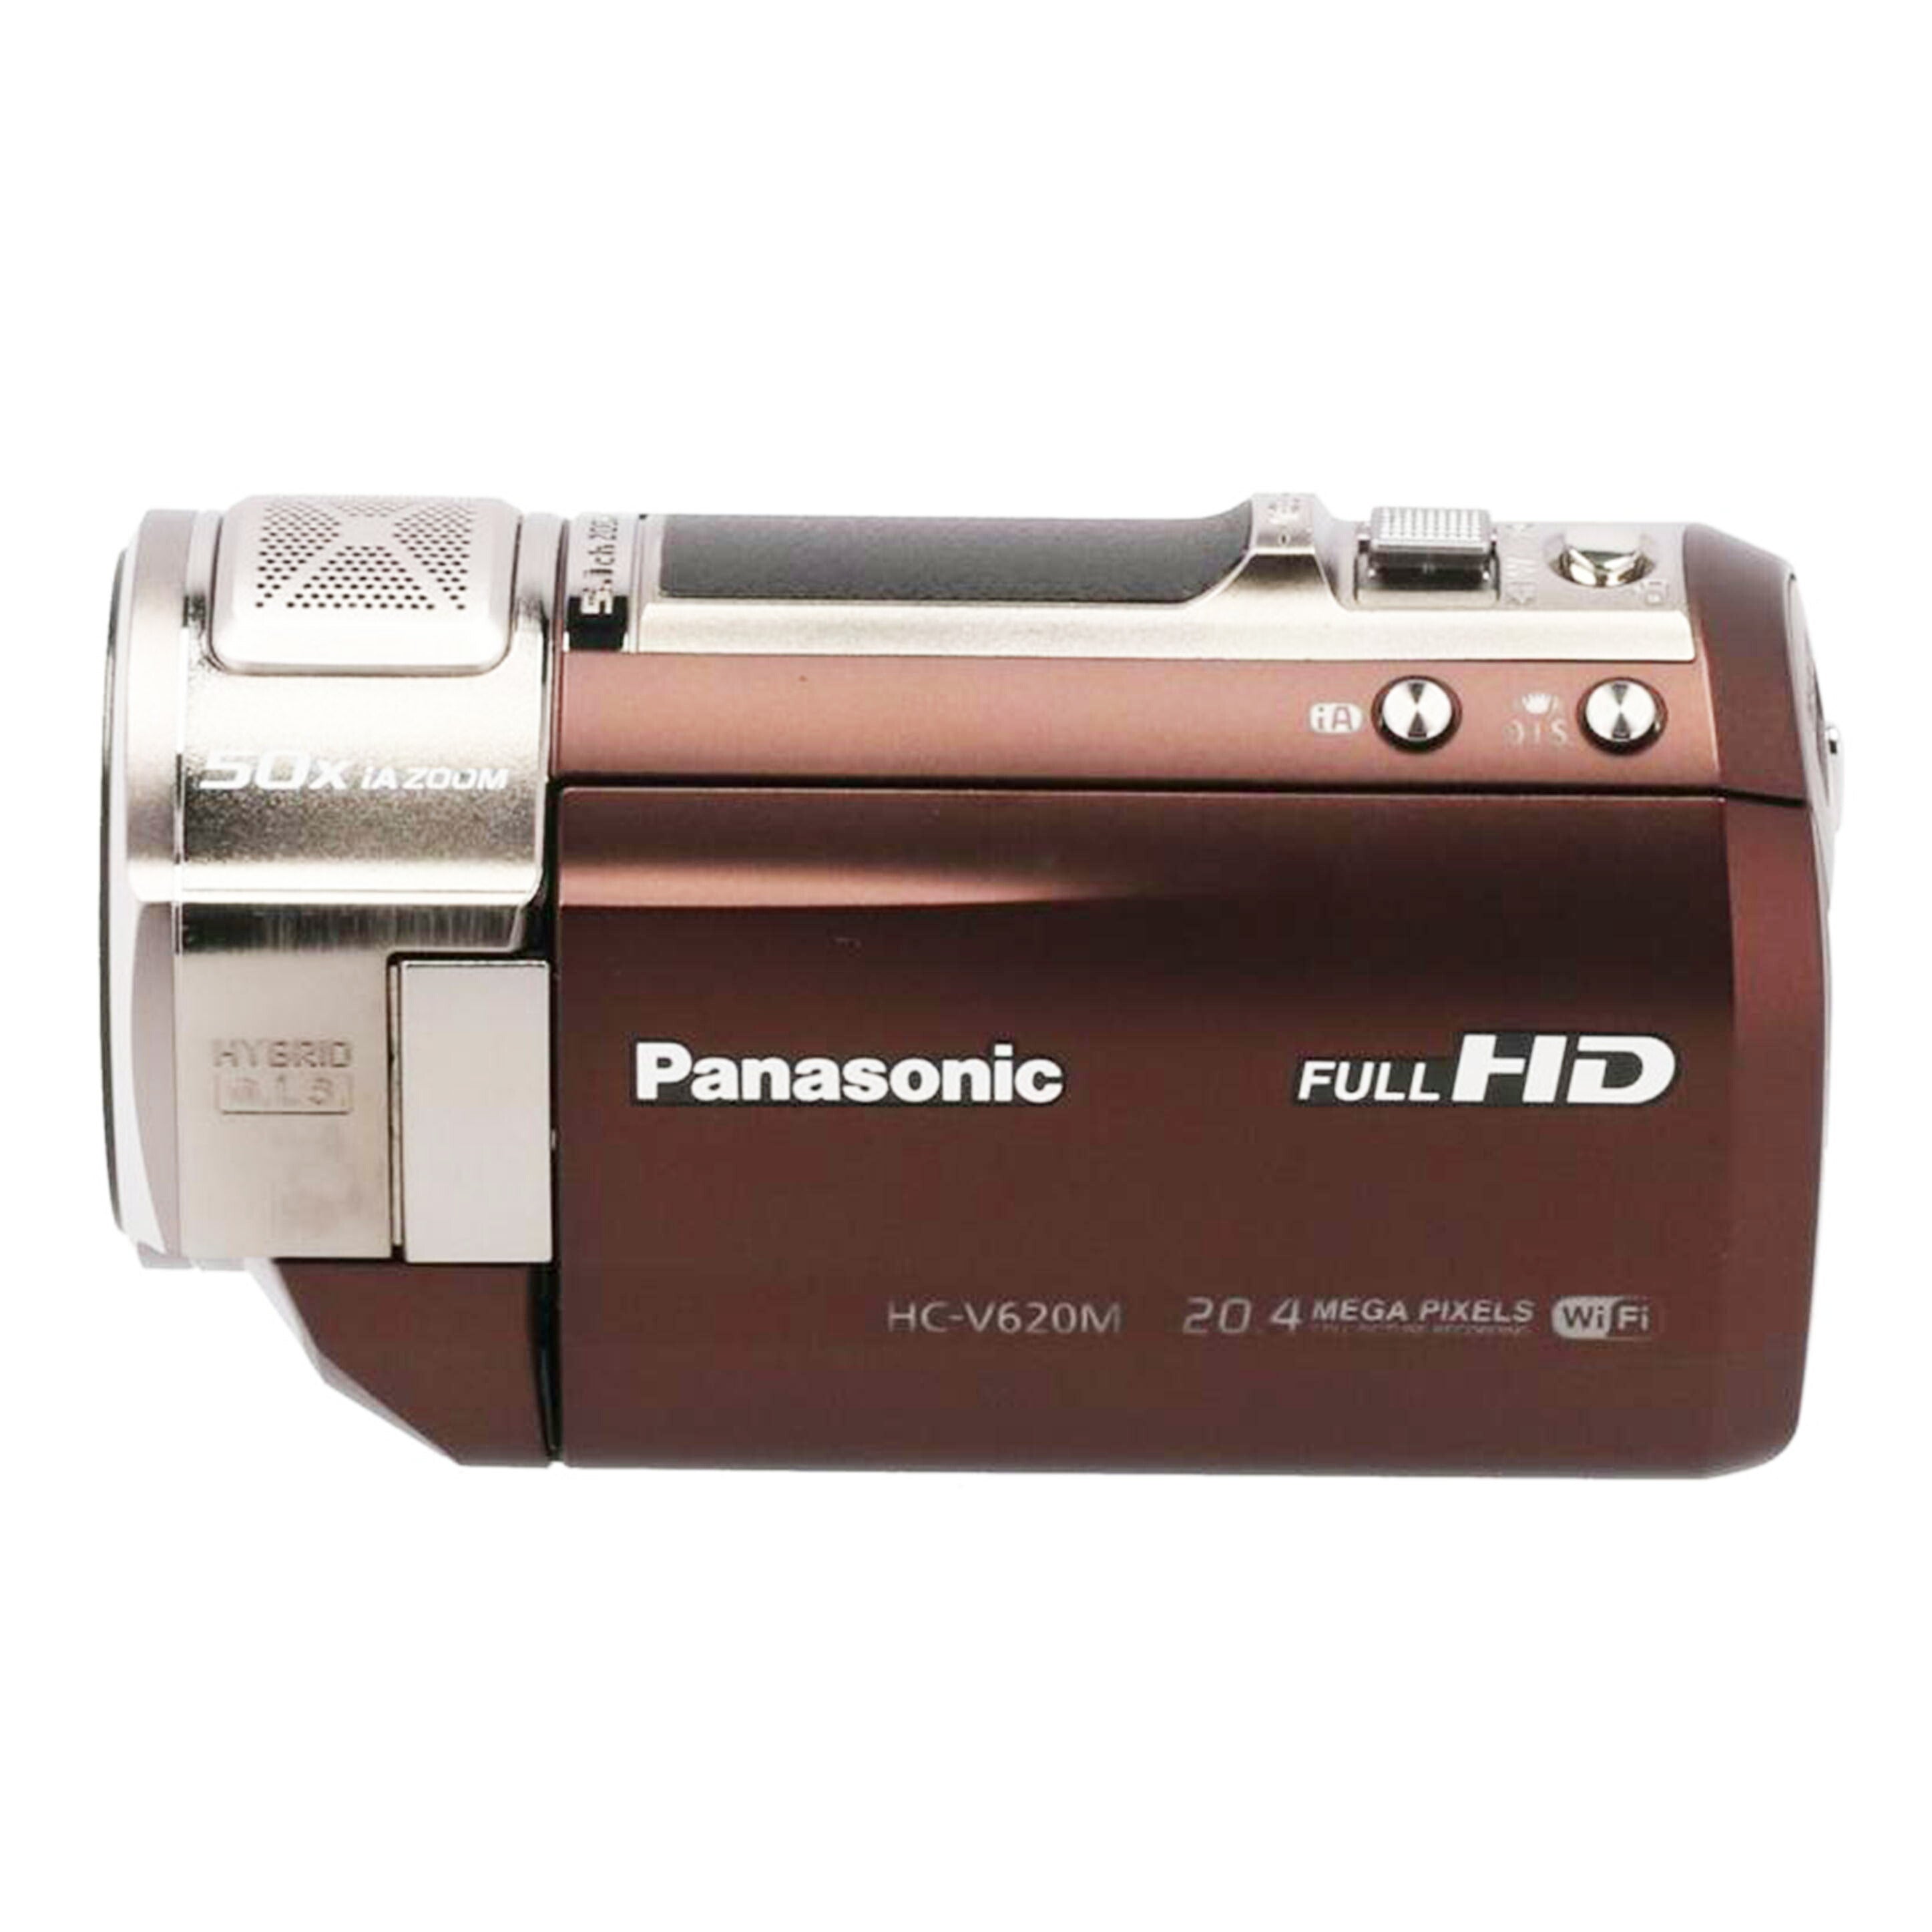 Ｐａｎａｓｏｎｉｃ パナソニック/デジタルビデオカメラ/HC-V620M//CR3DA002158/Bランク/77